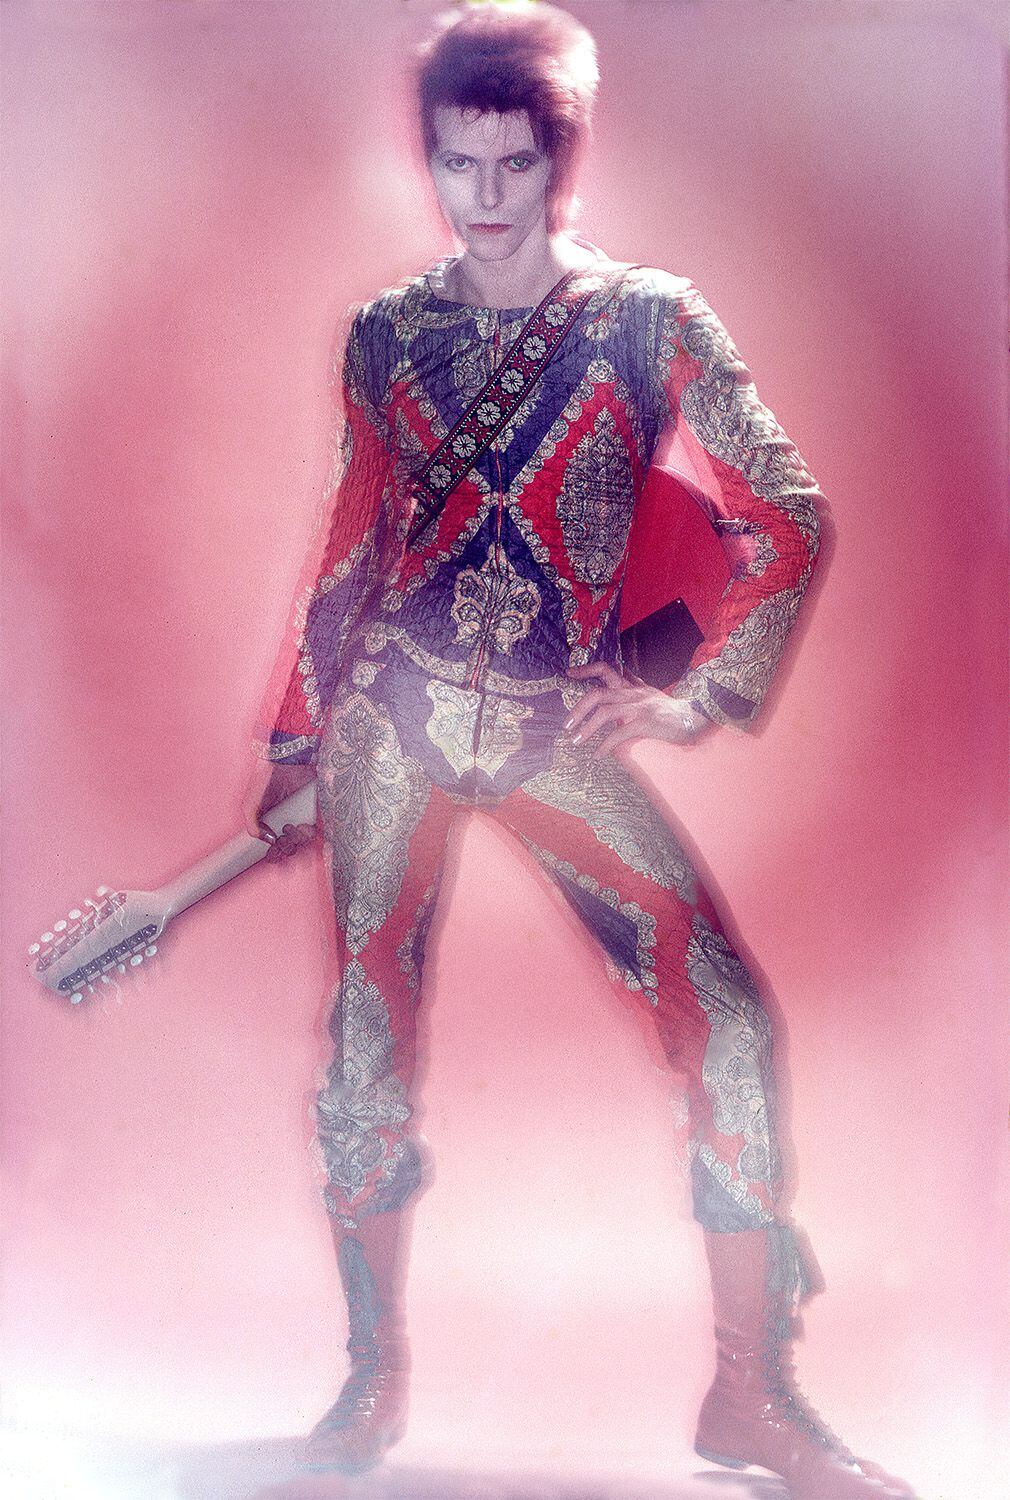 Bowie escogió una versión colorista del atuendo de 'La naranja mecánica' diseñado por Freddie Burretti para su actuación de 1972 en 'Top of the Pops'. Así posó con él para la lente de Duffy. Ahora forma parte de la exposición 'Bowie taken by Duffy'.